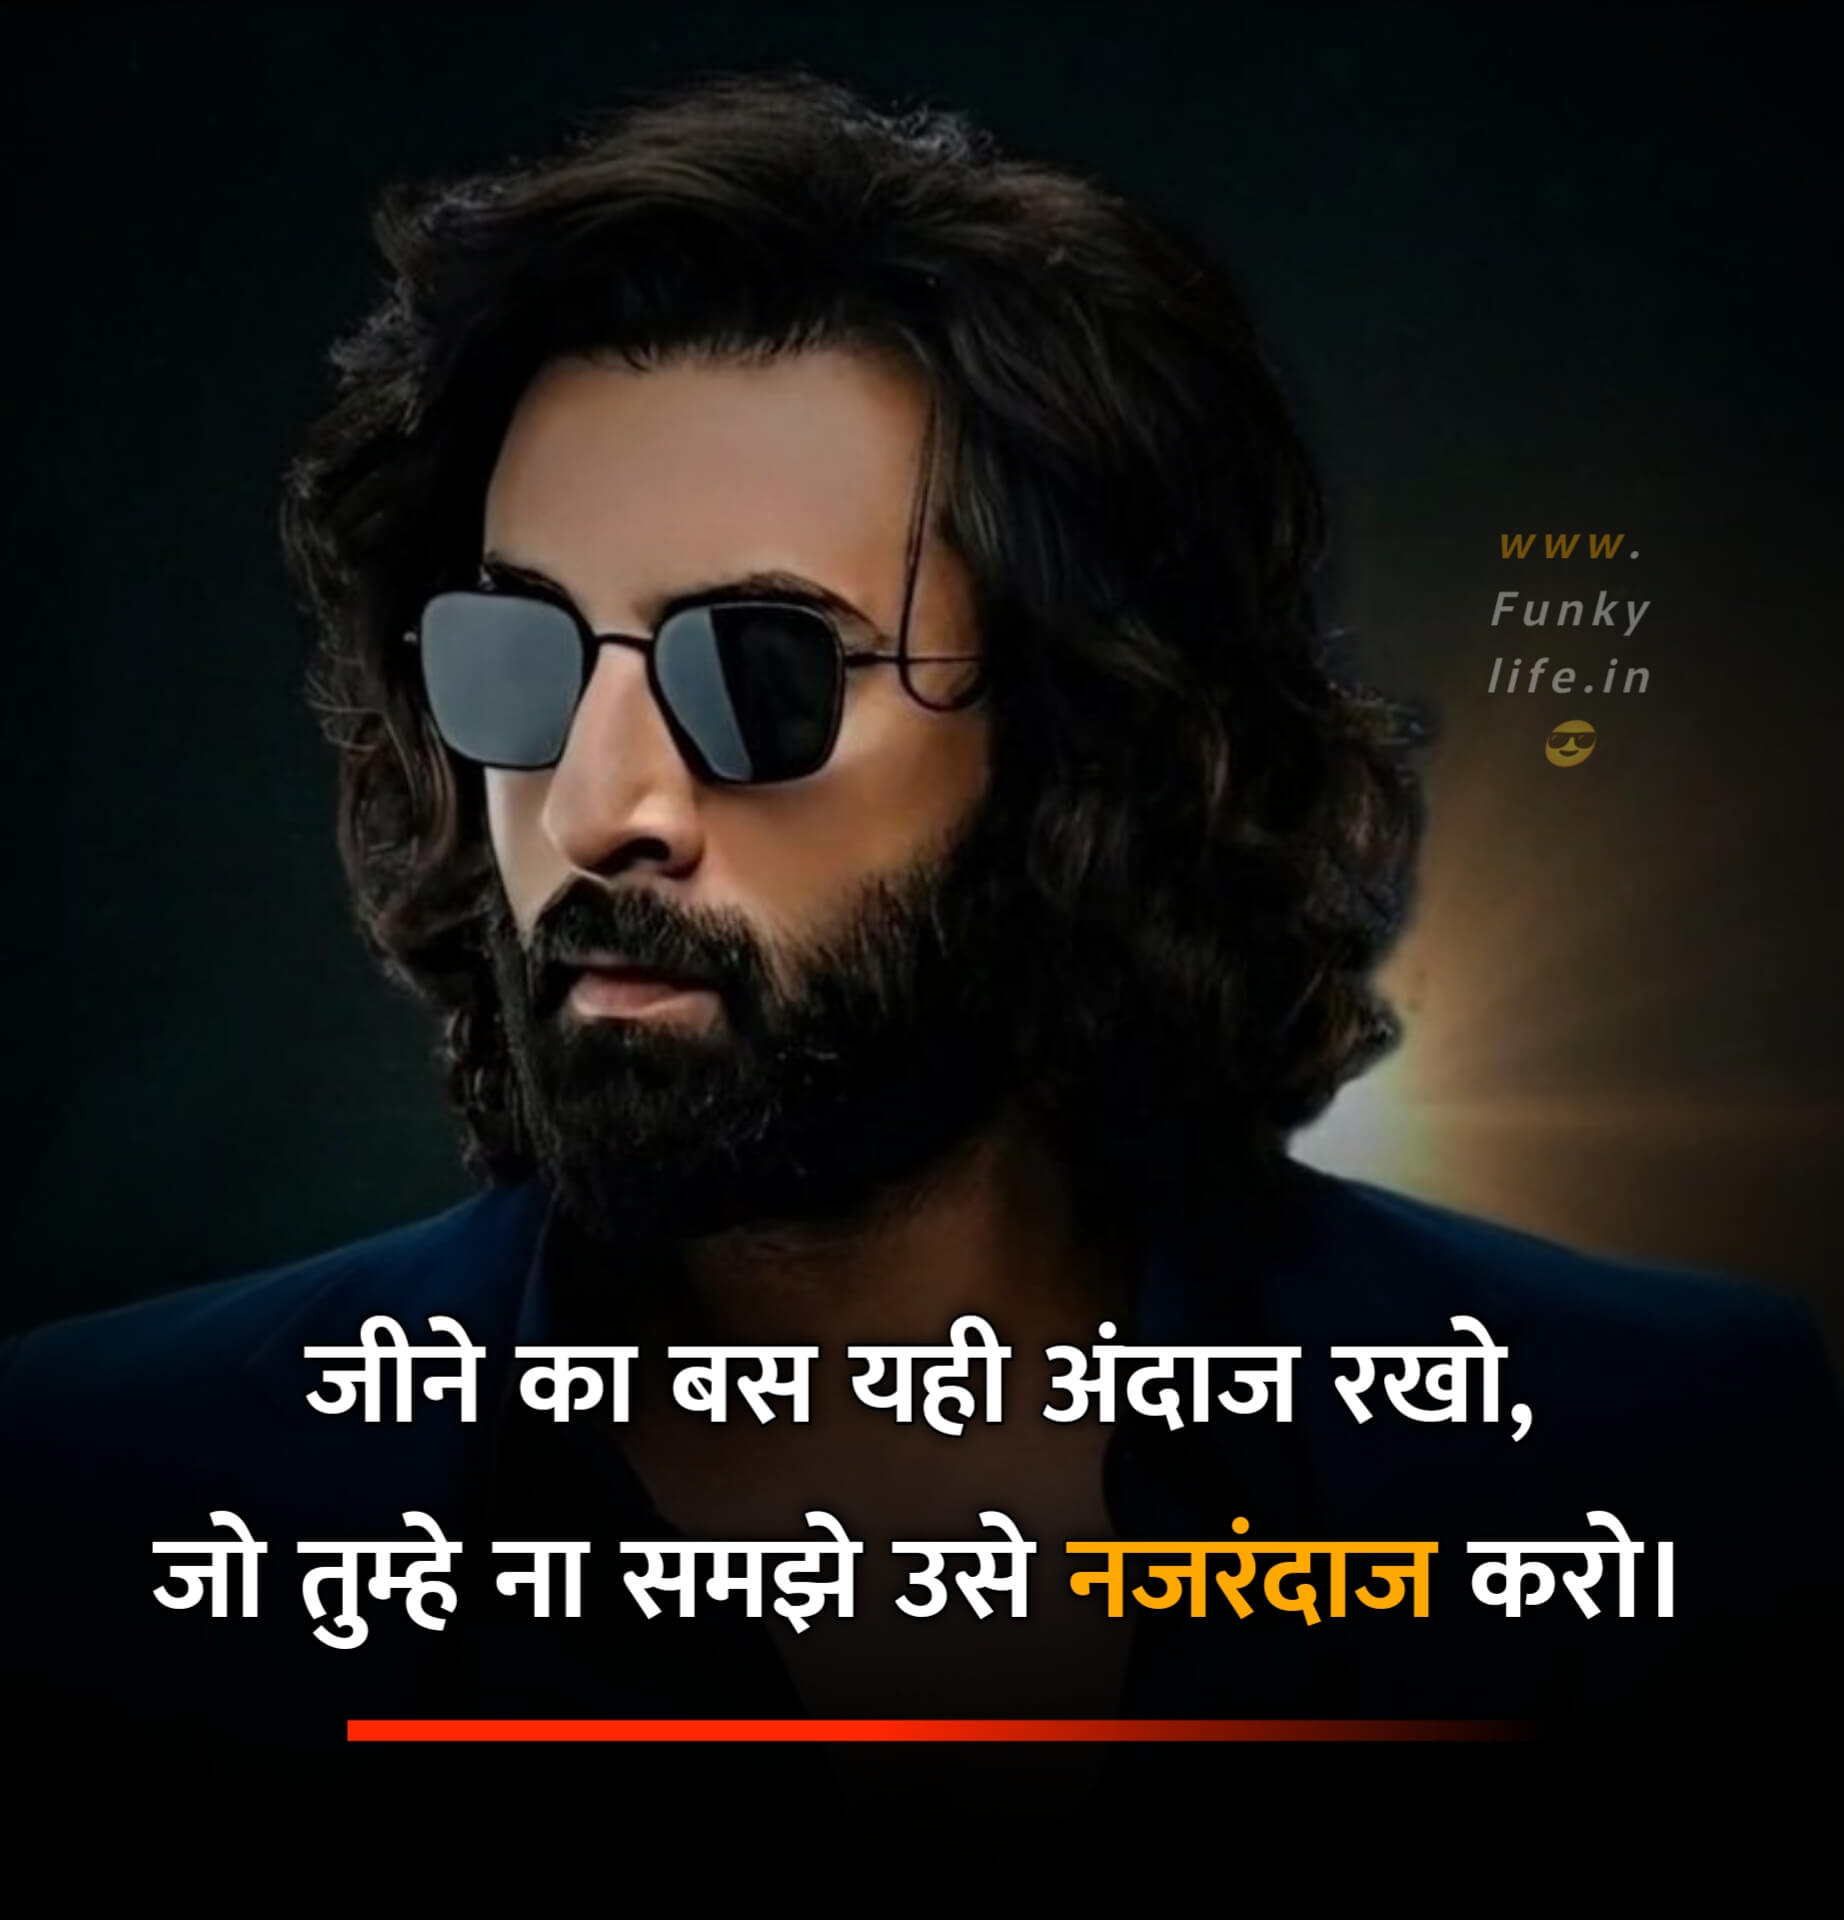 Attitude Quote for Boys in Hindi